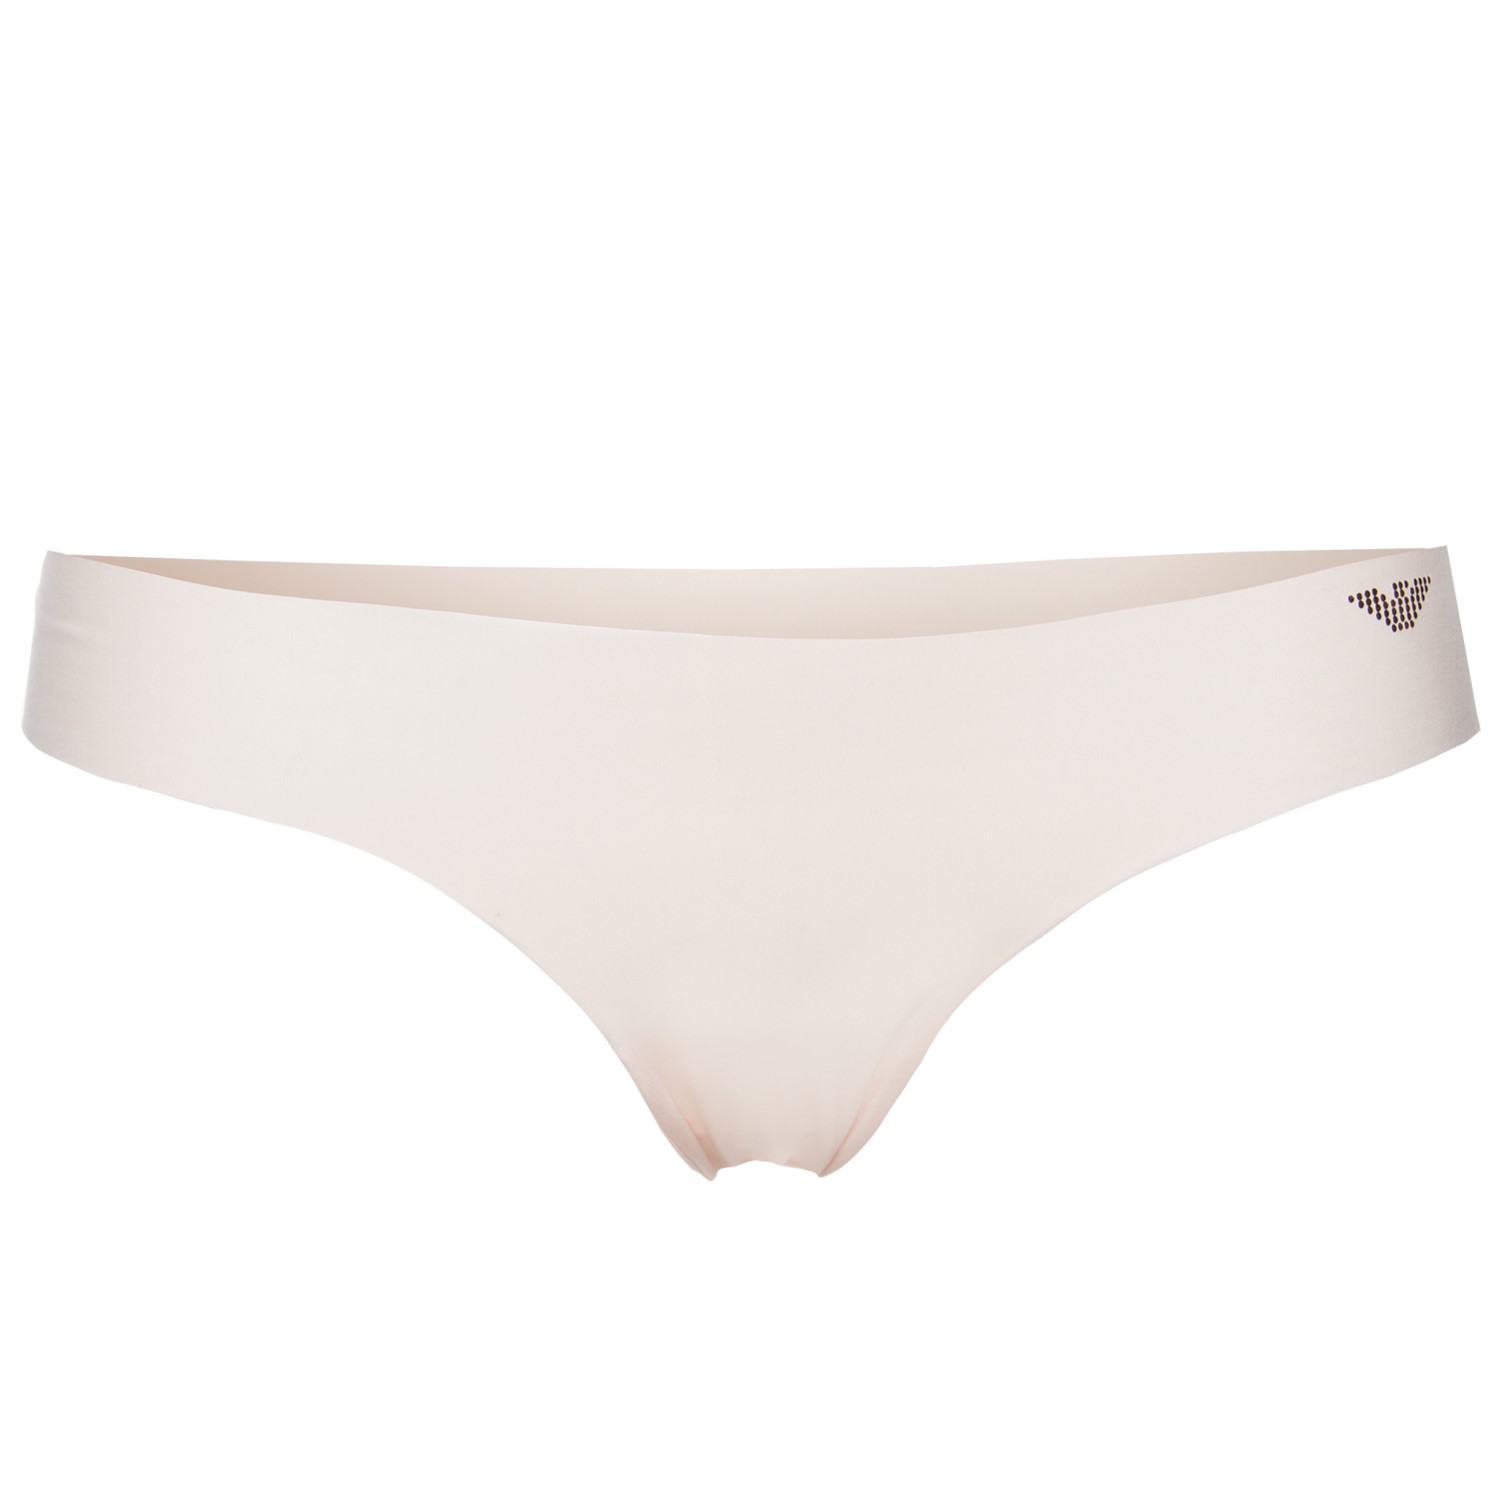 Emporio Armani Visibility Laser Cut Panties Thong